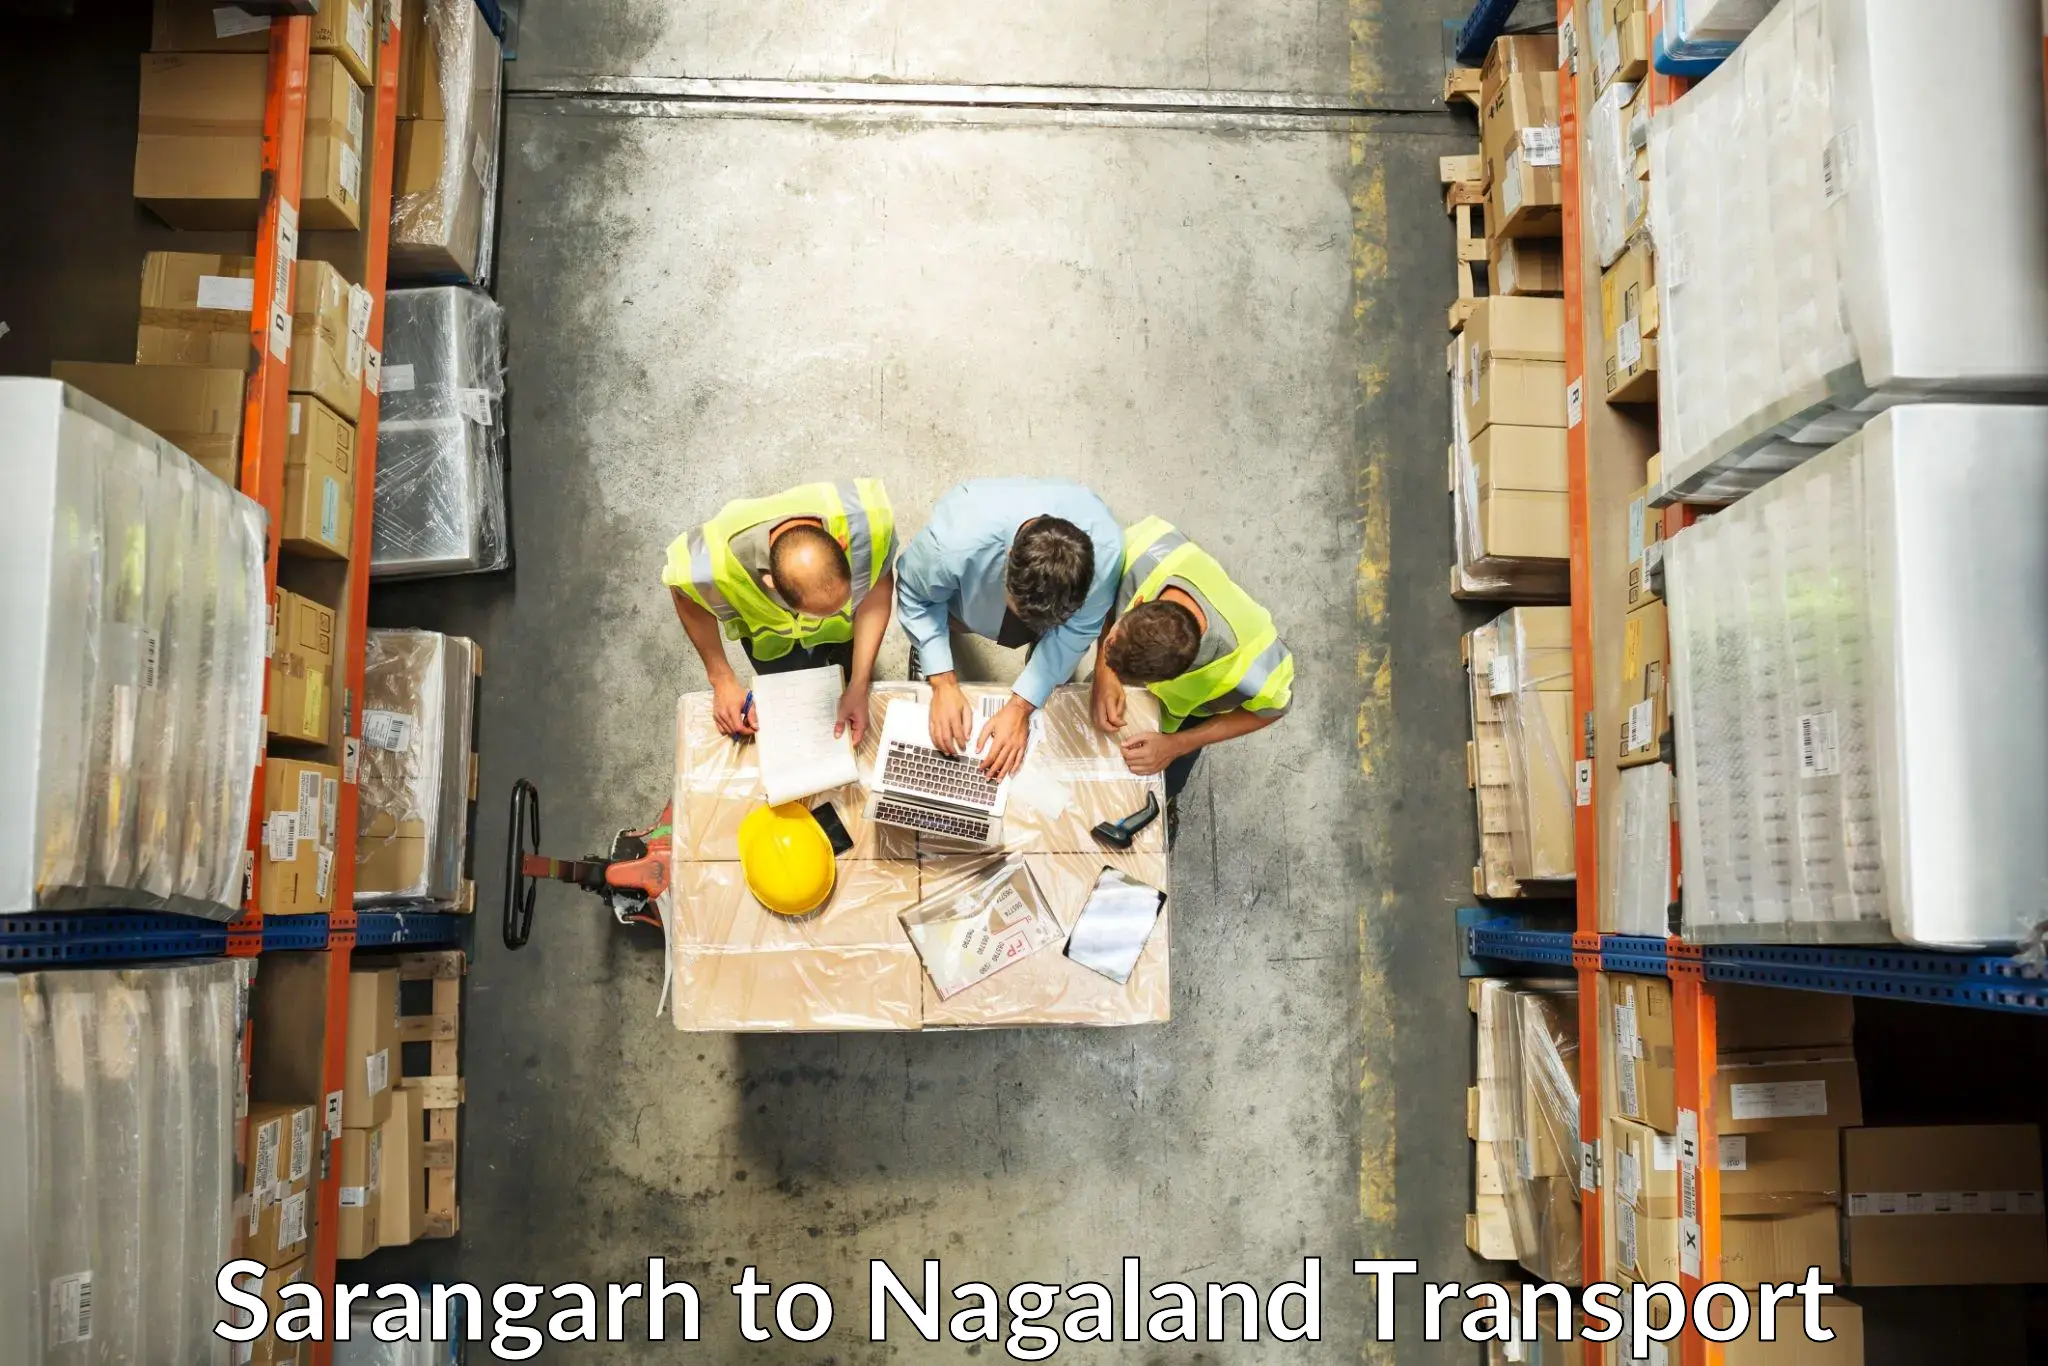 Air freight transport services Sarangarh to NIT Nagaland